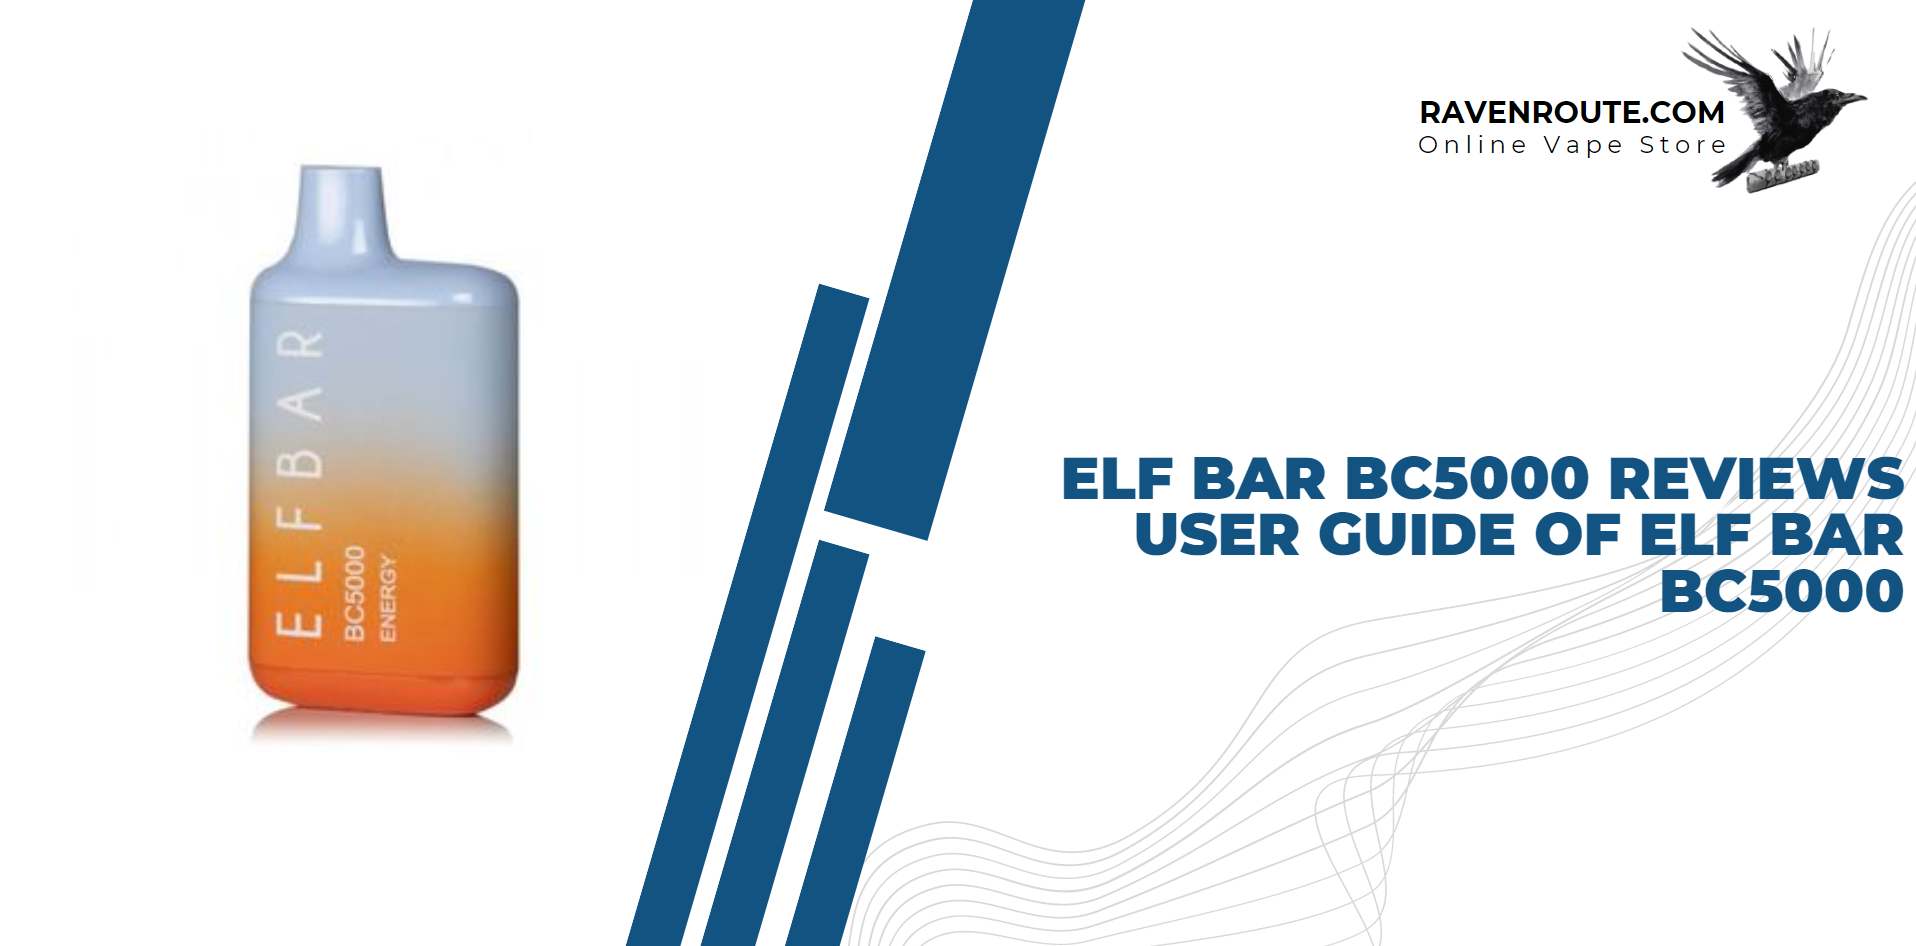 Elf Bar BC5000 Reviews - User Guide of Elf Bar BC5000